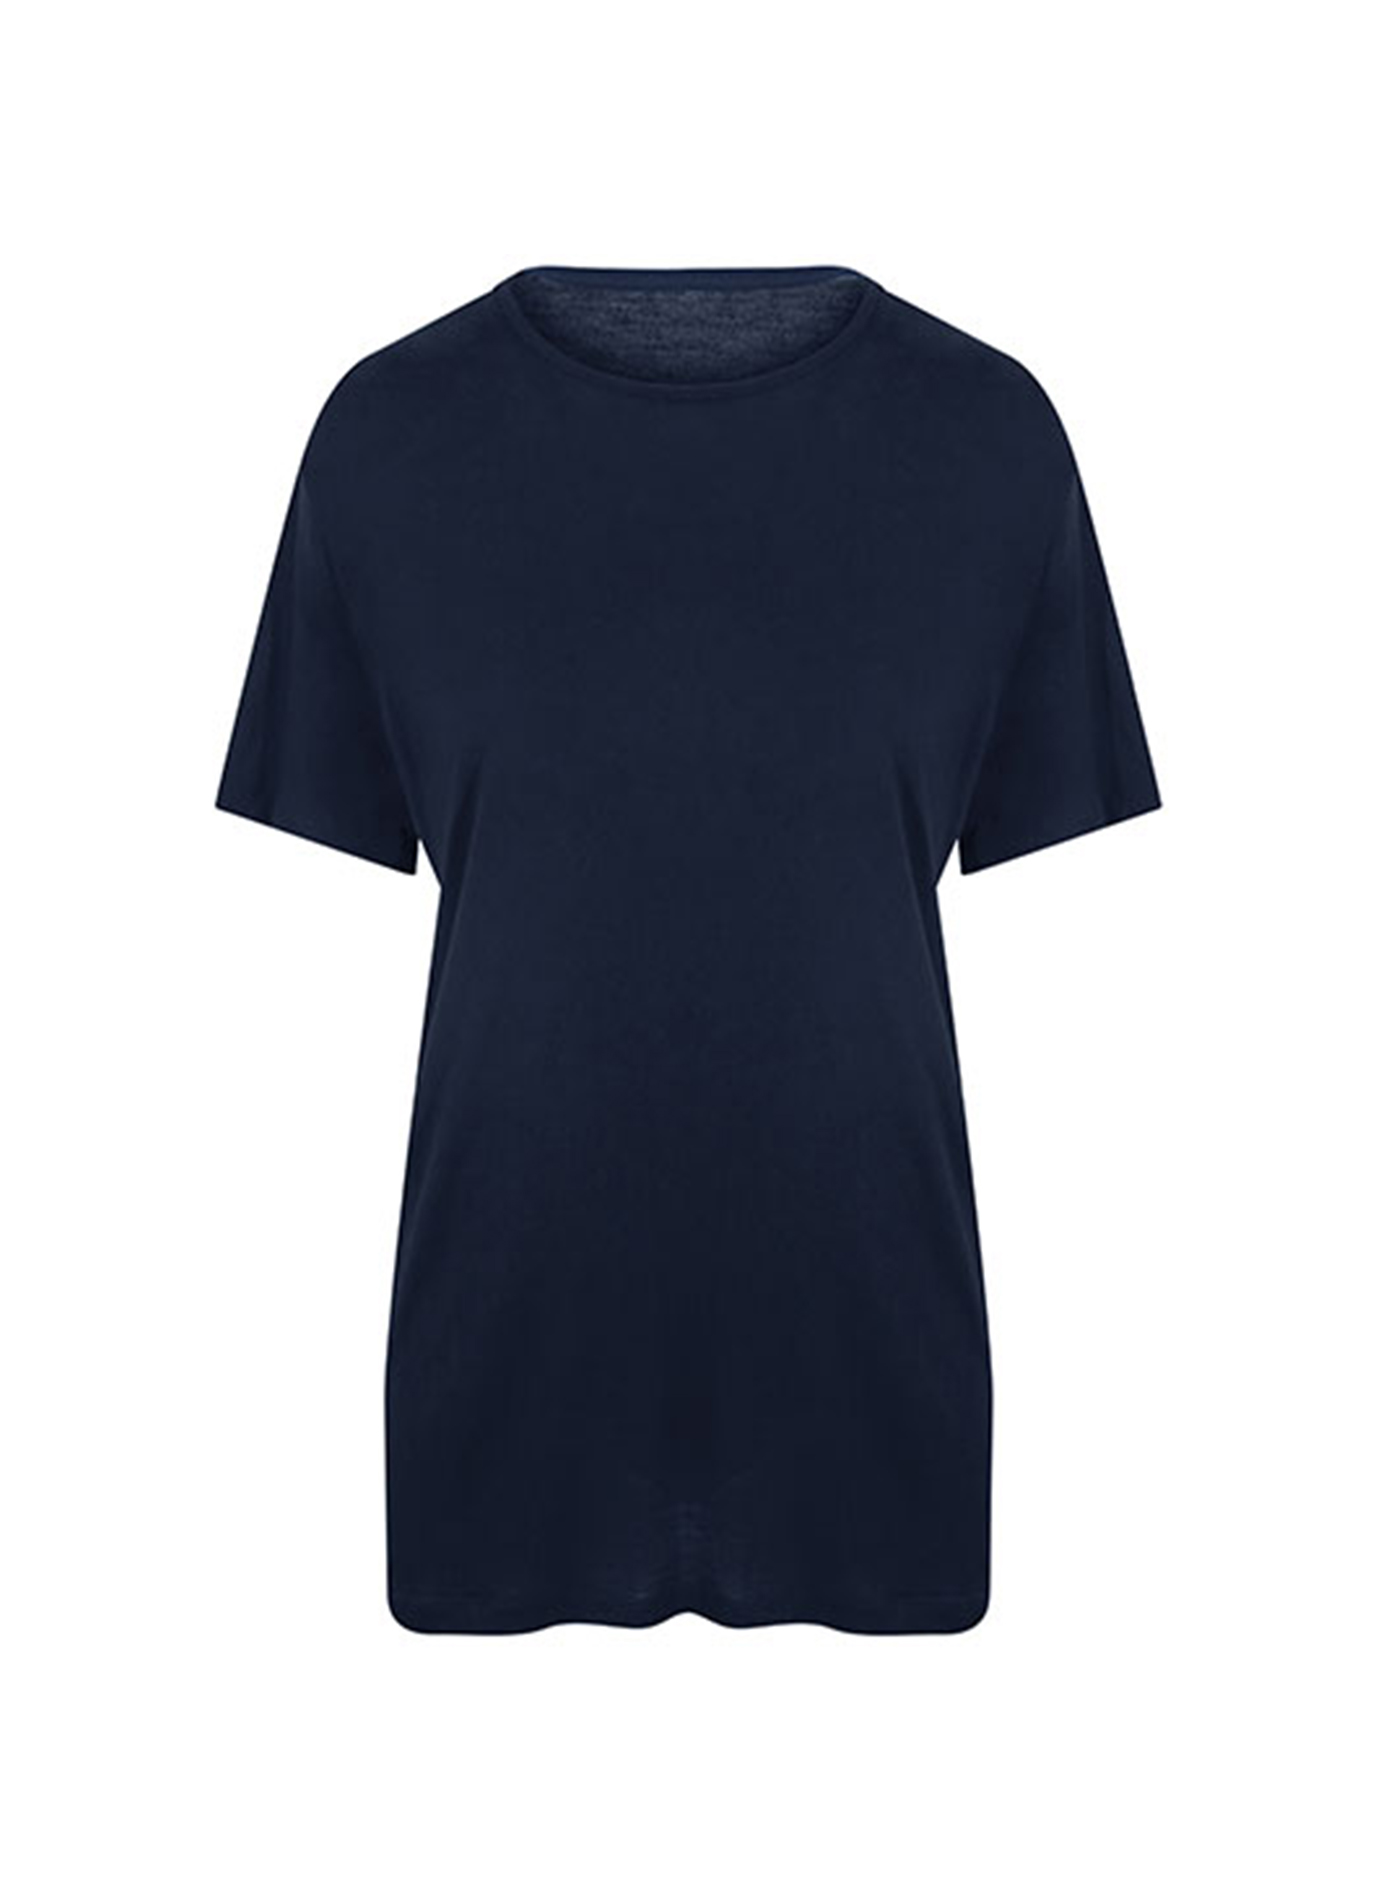 Pánské tričko Ecologie DainTree EcoViscose - Námořní modrá L